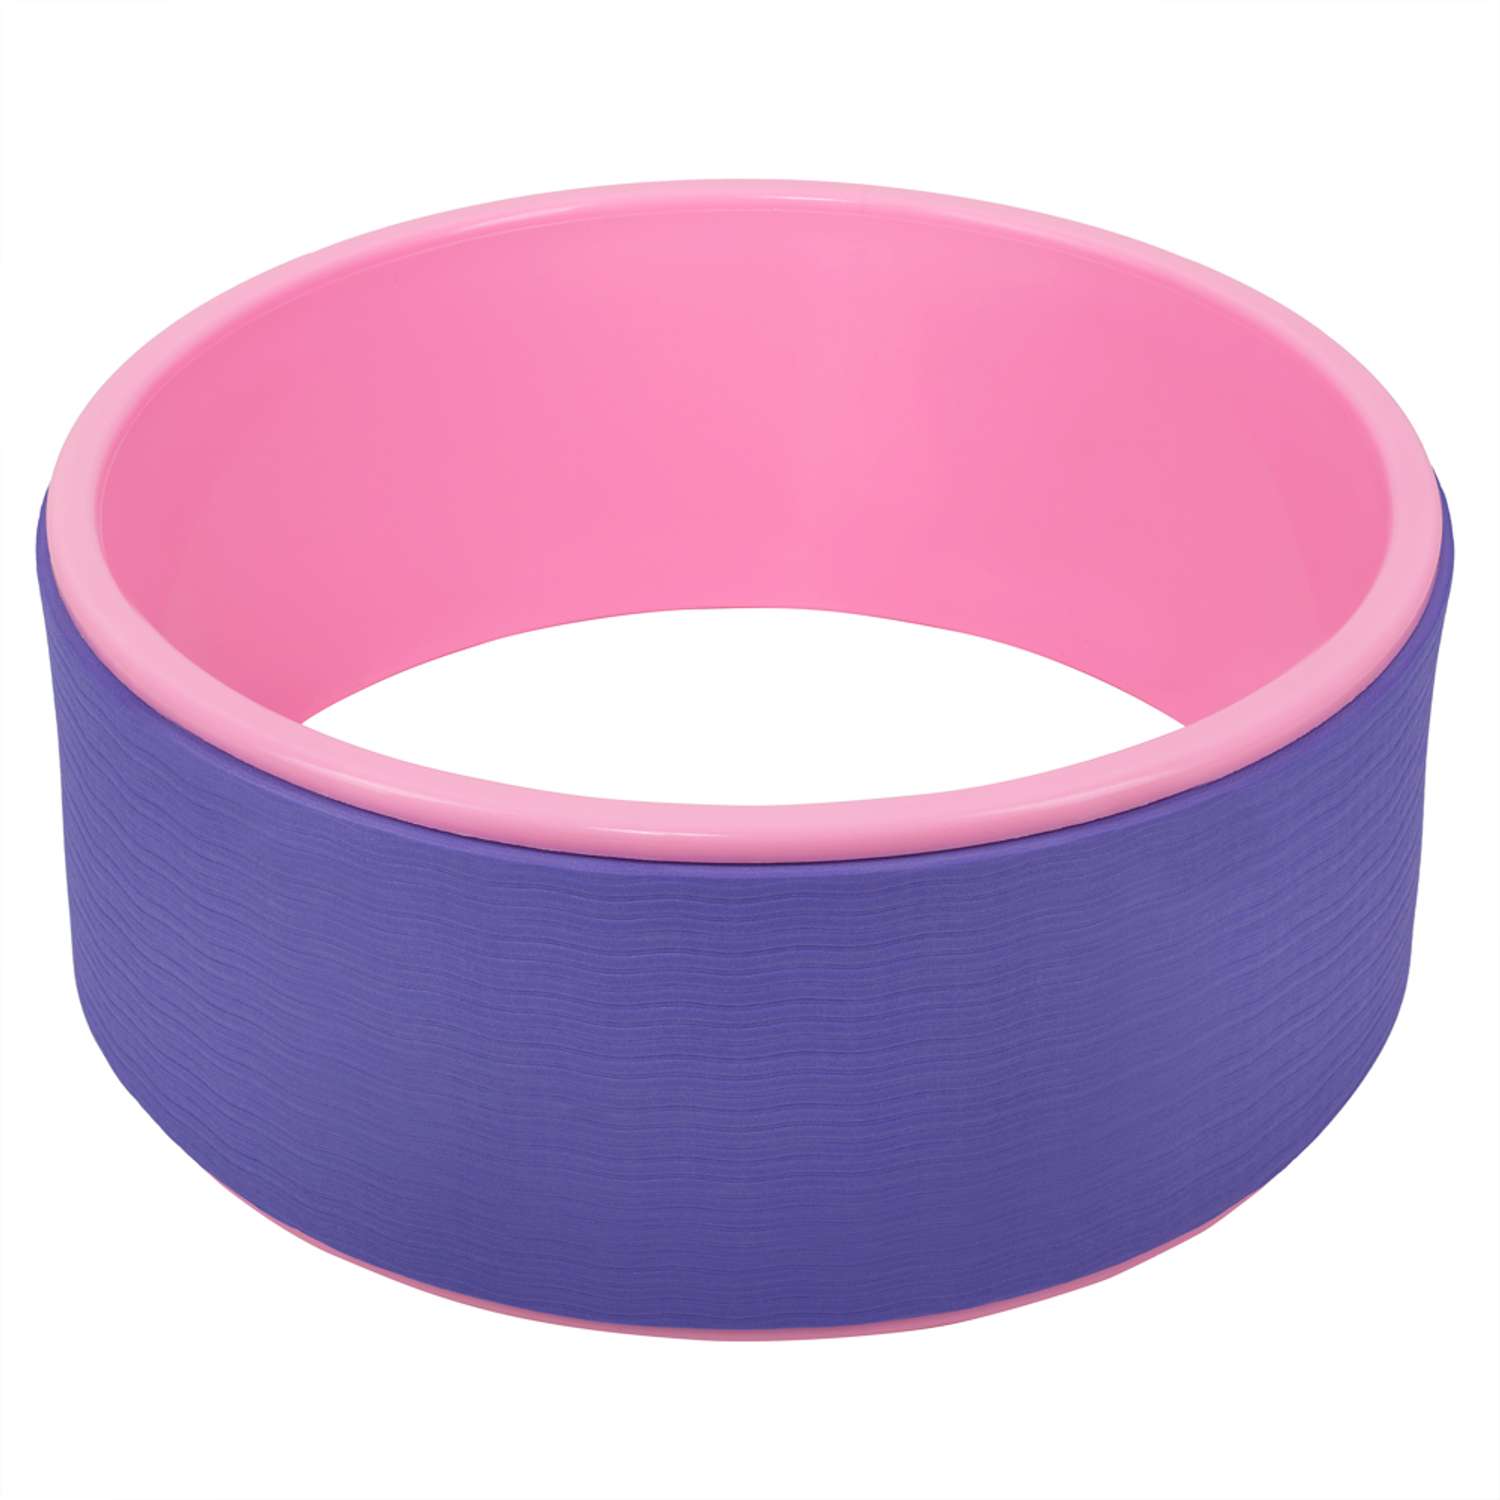 Колесо для йоги STRONG BODY фитнеса и пилатес 30 см х 12 см фиолетово-розовое - фото 4